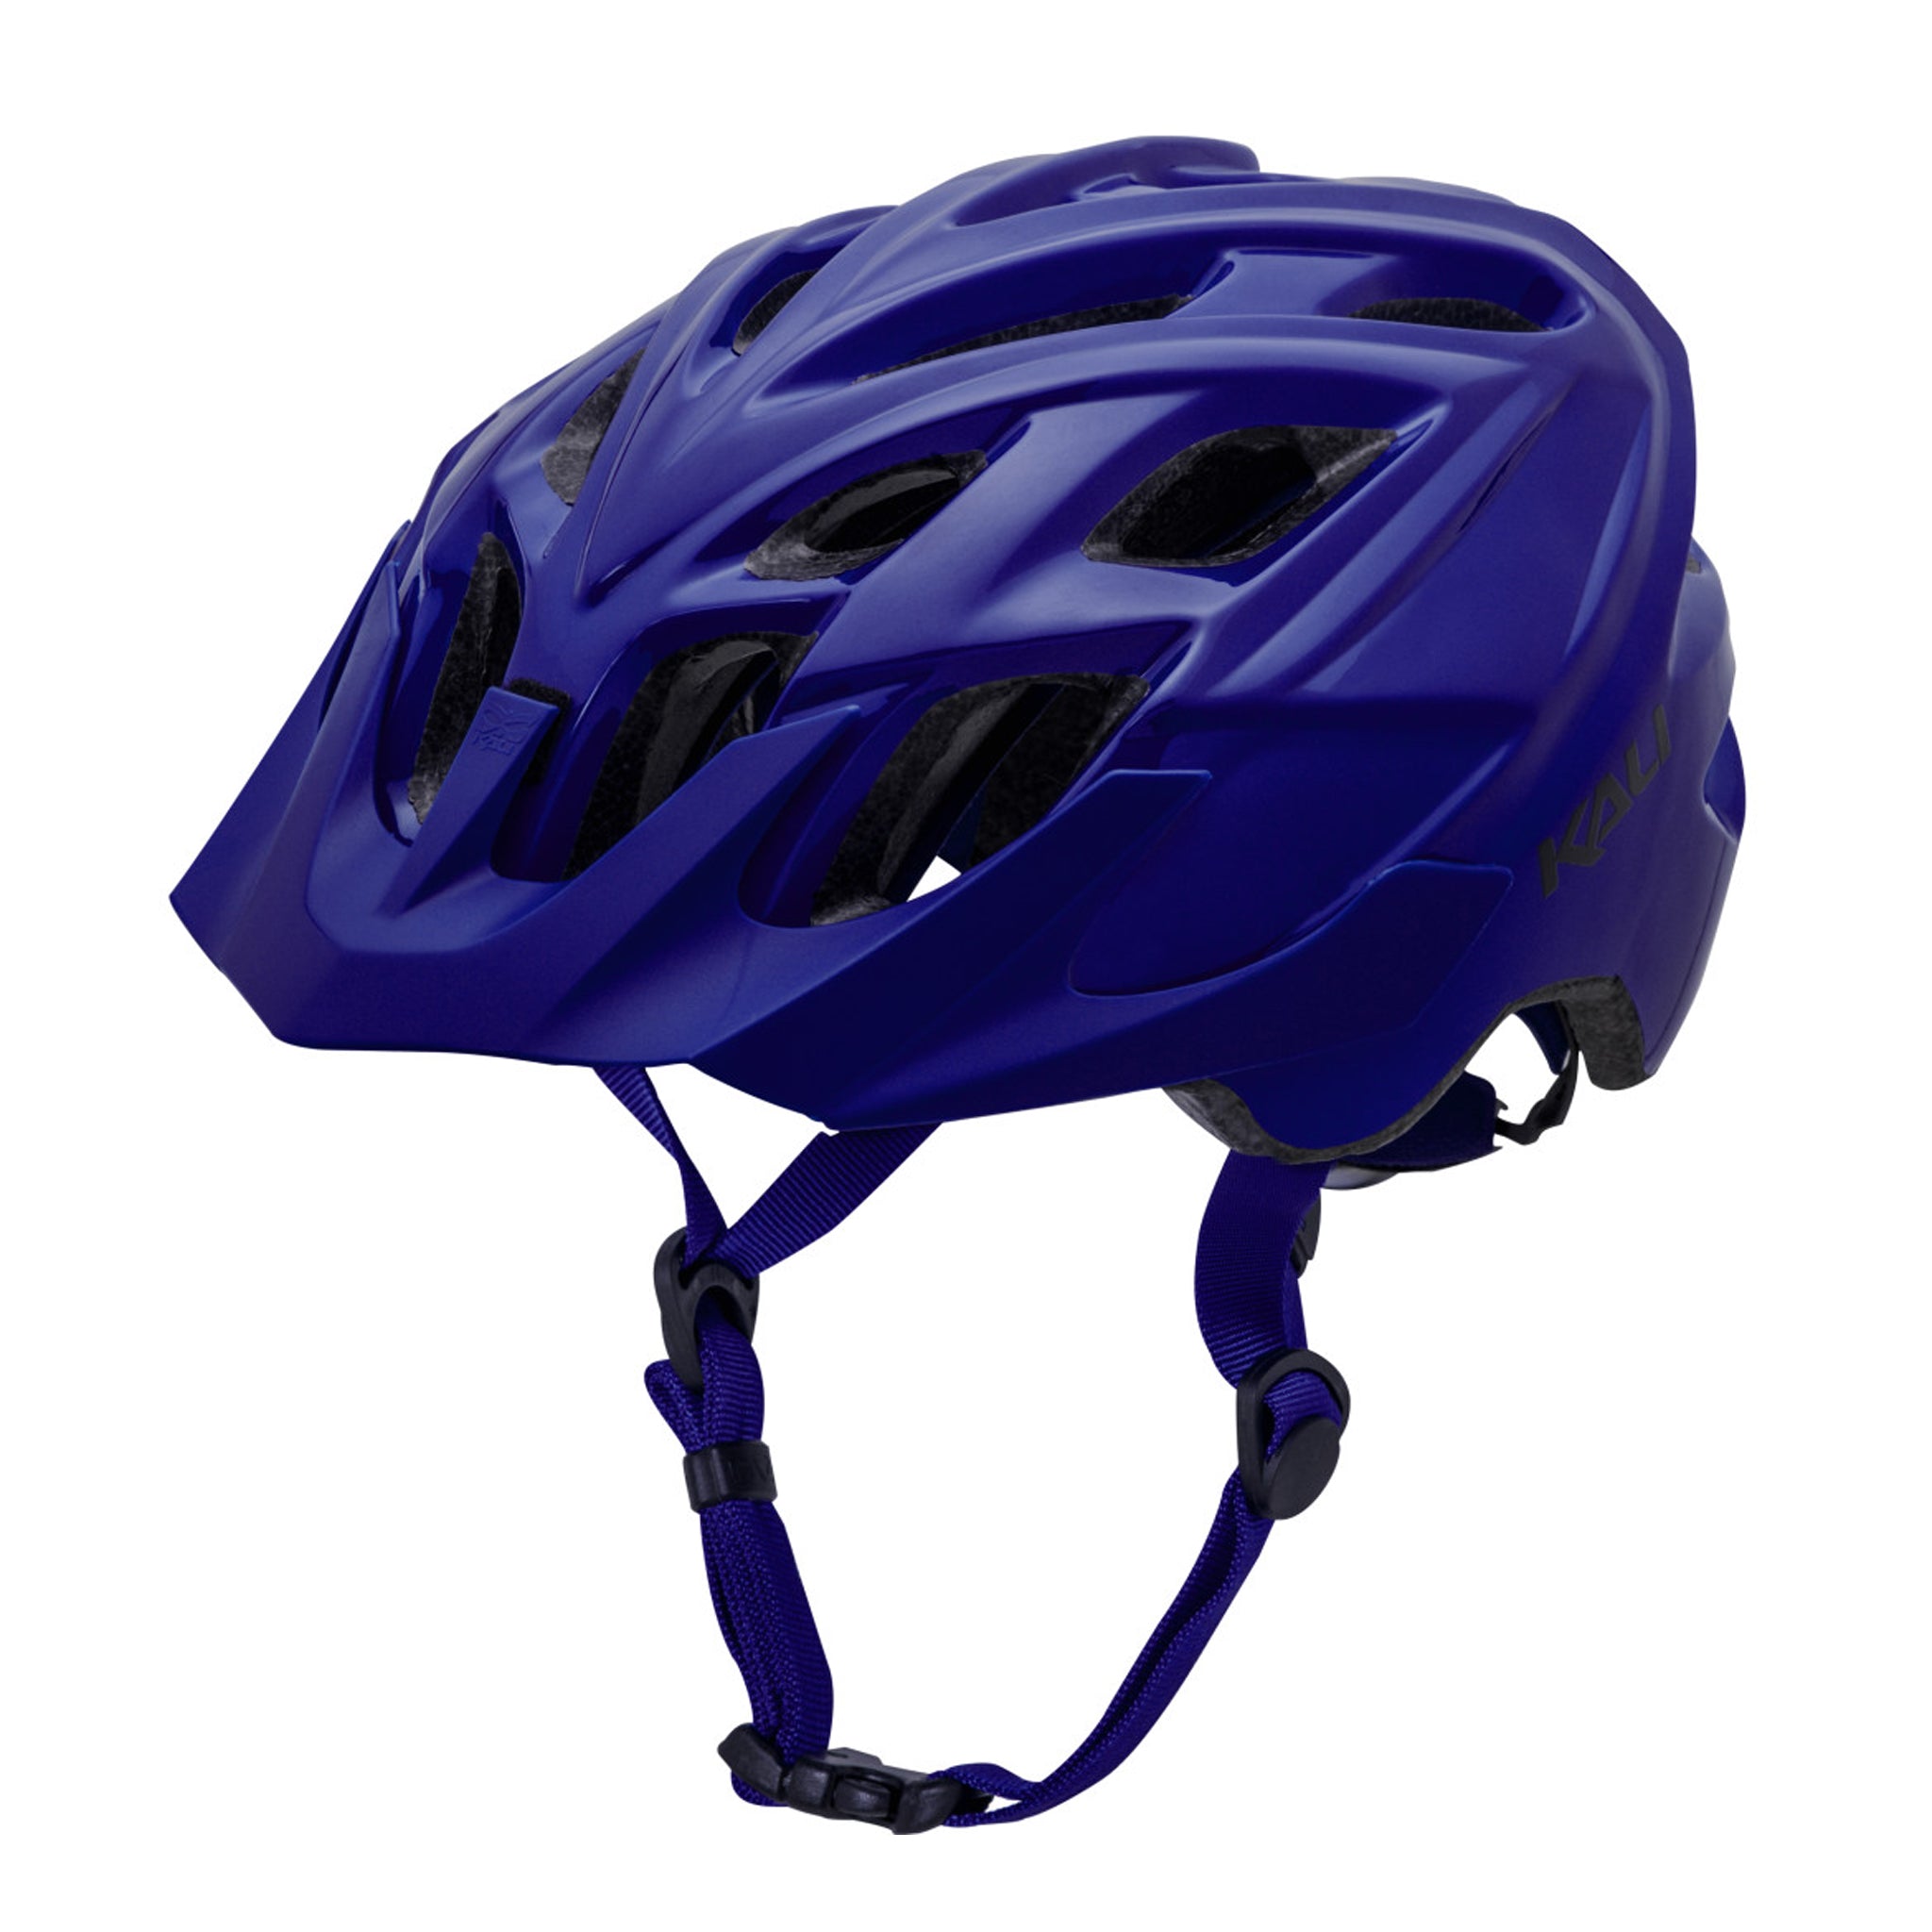 Kali Chakra Solo Trail Helmet Small/Medium Blue